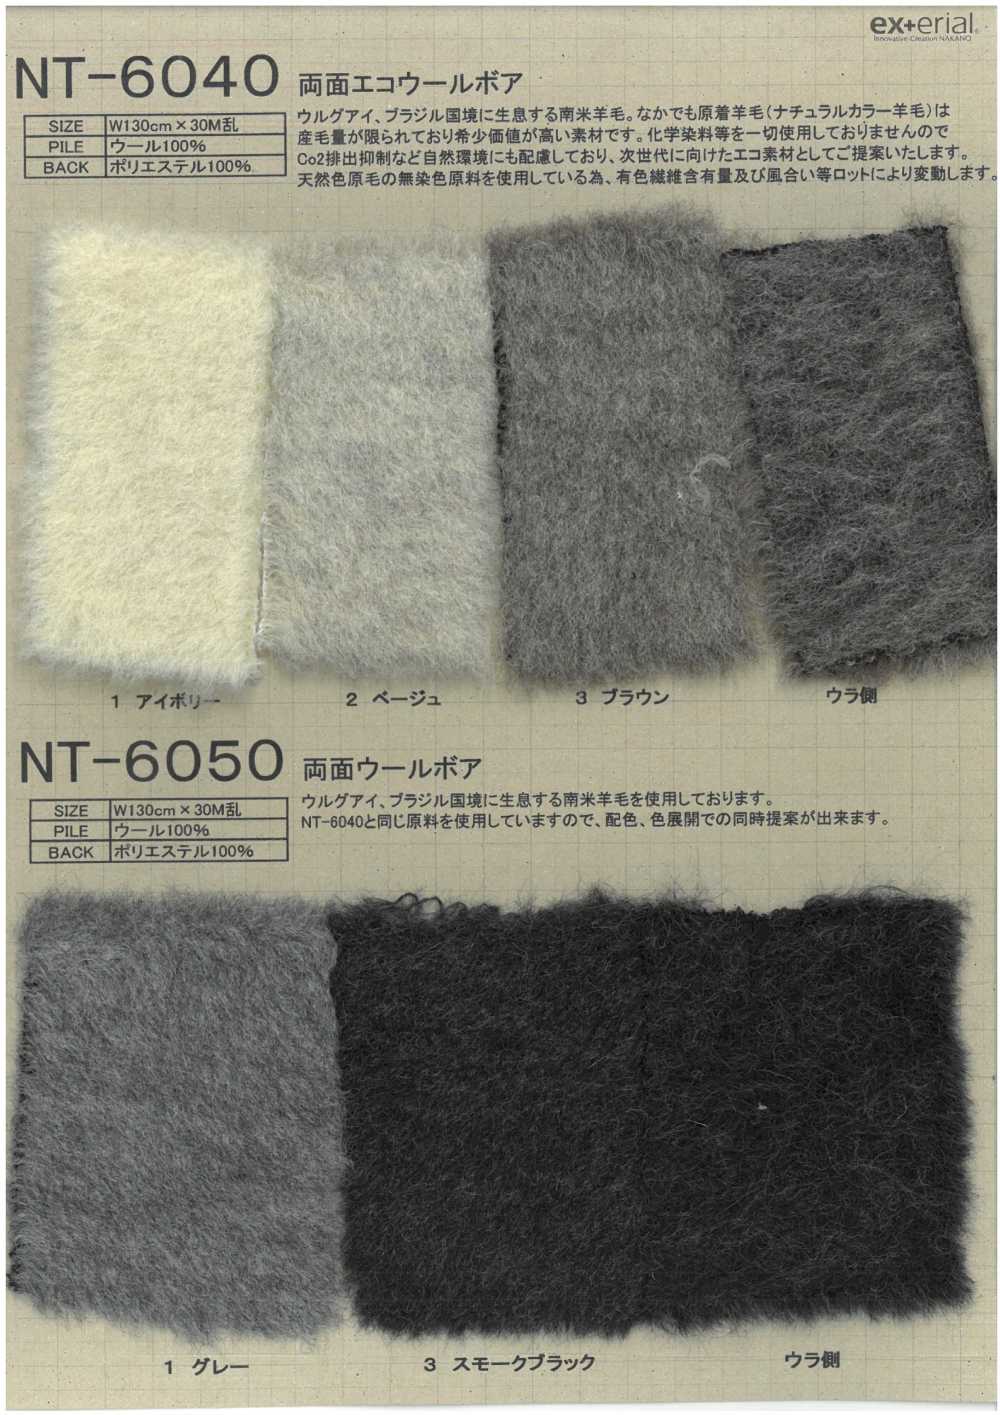 NT-6050 Fourrure Artisanale [Boa En Laine Double Face][Fabrication De Textile] Industrie Du Jersey Nakano